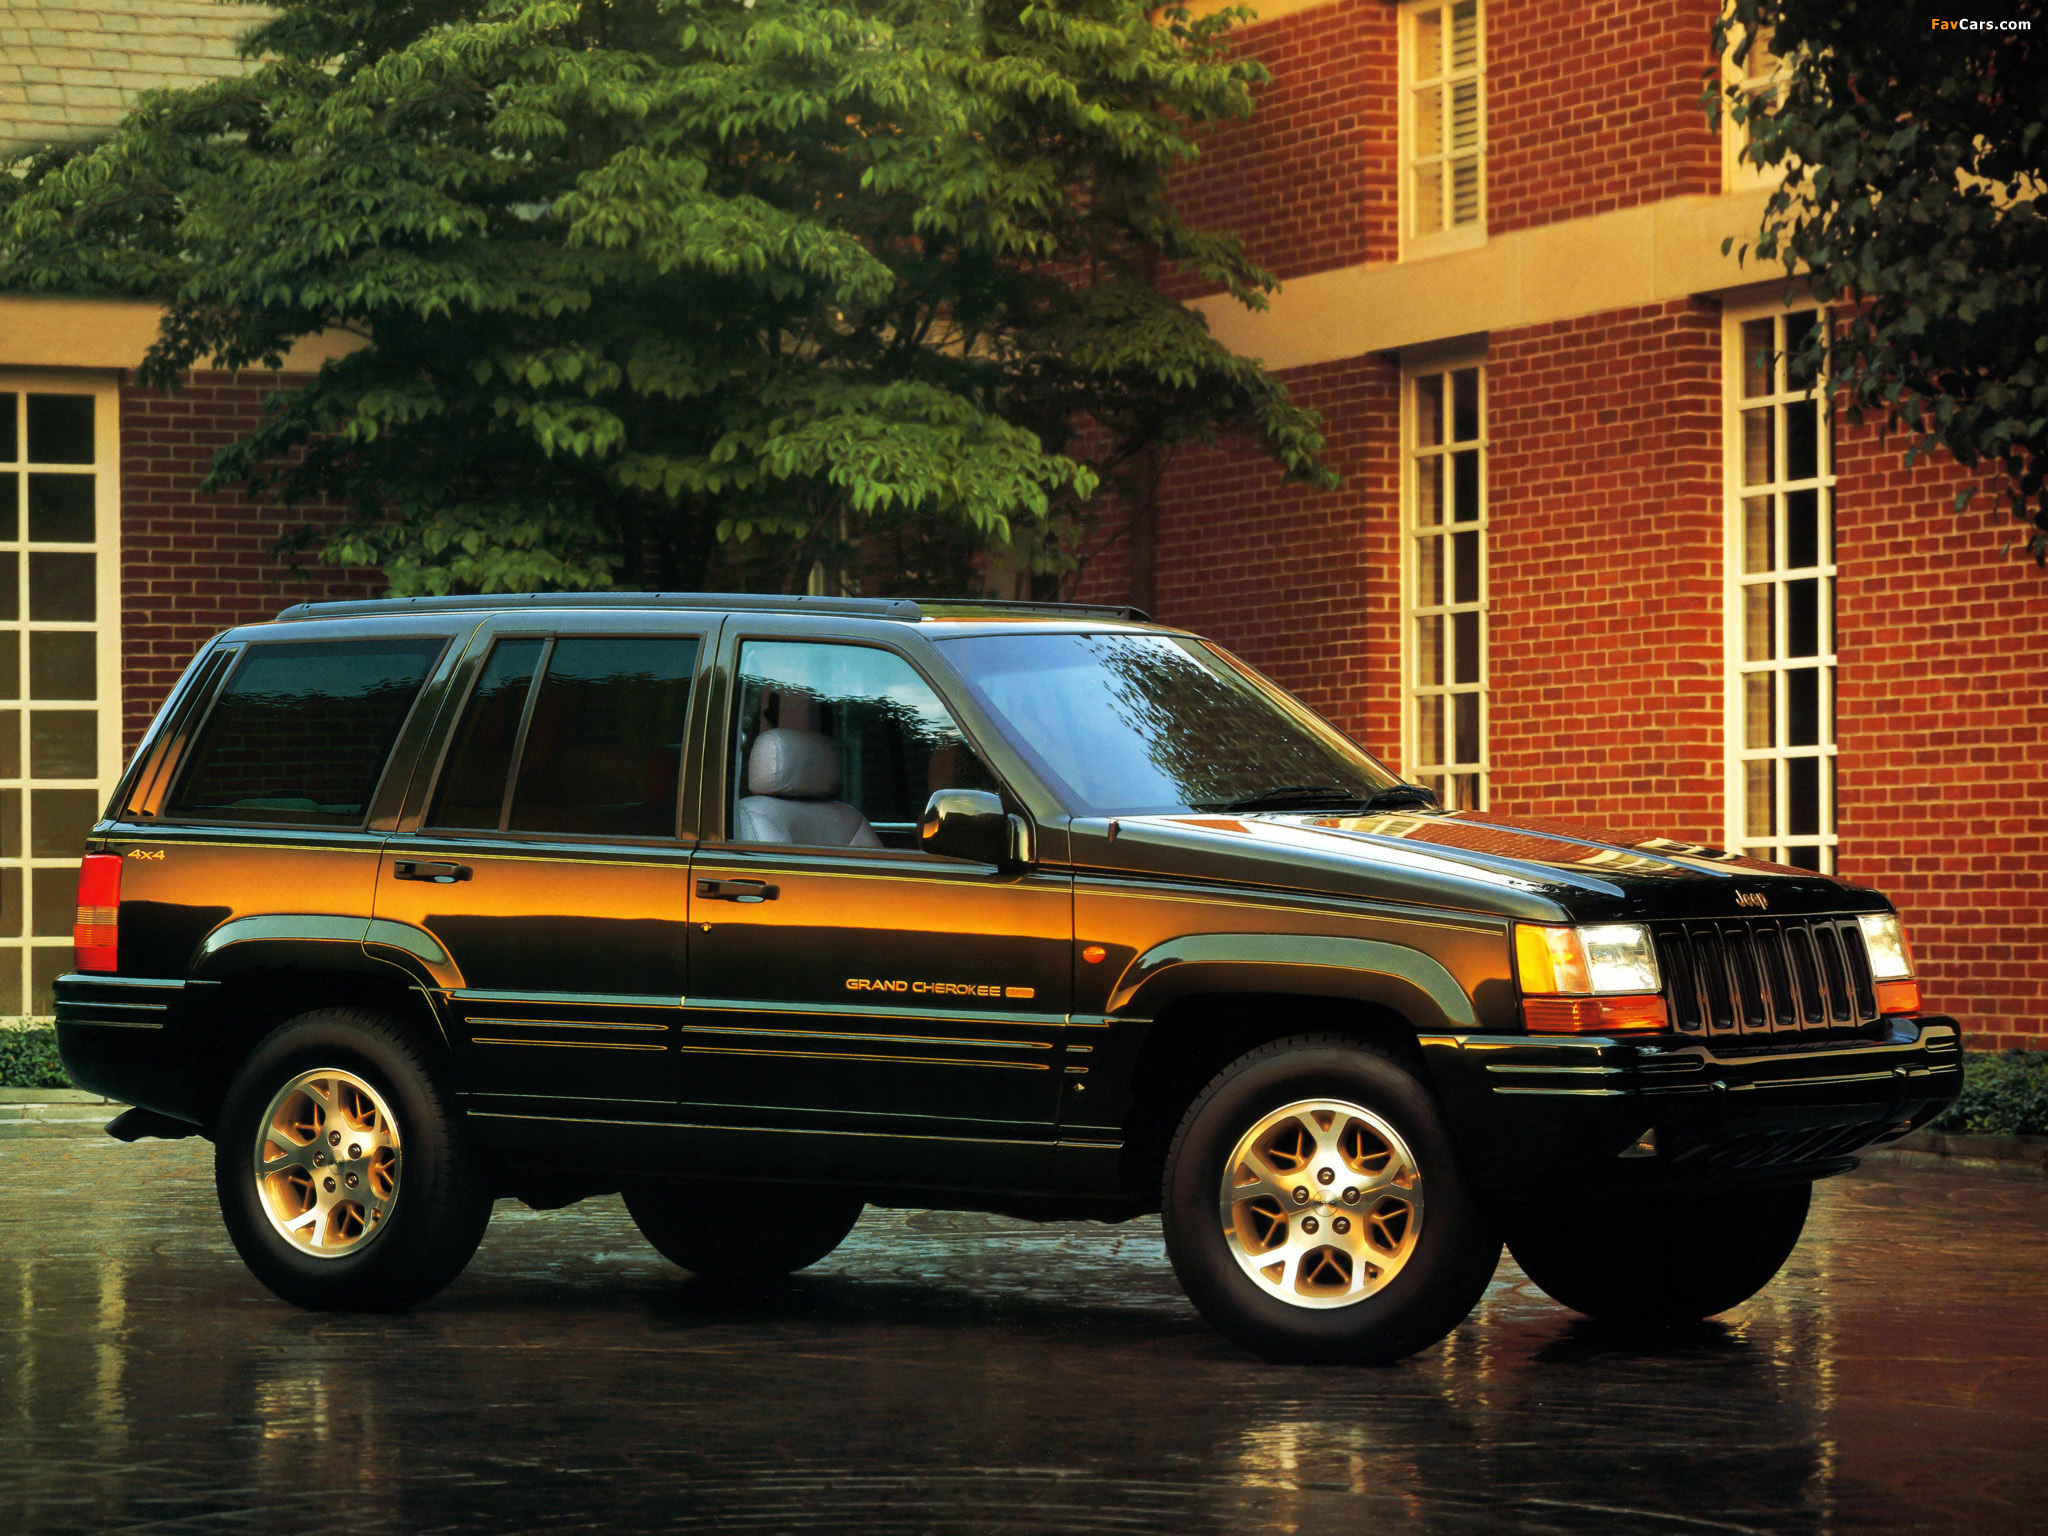 Гранд чароки. Jeep Grand Cherokee 1996. Jeep Grand Cherokee Limited 1996. Джип Гранд Чероки Лимитед 1996. Jeep Grand Cherokee ZJ 1996 5.2.